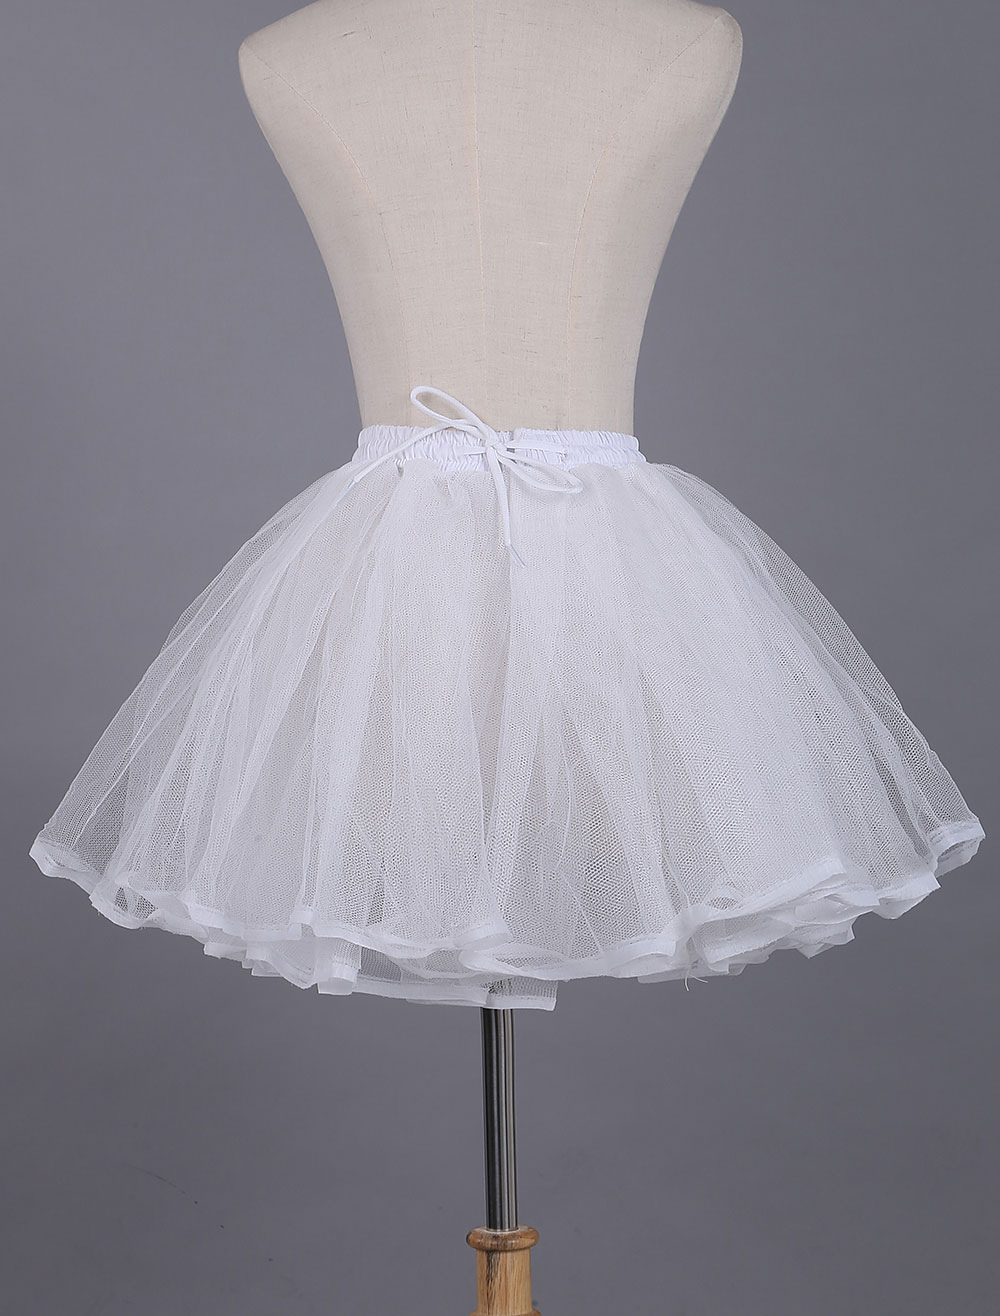 White Lolita Petticoat Lace Polyester Petticoat - Milanoo.com